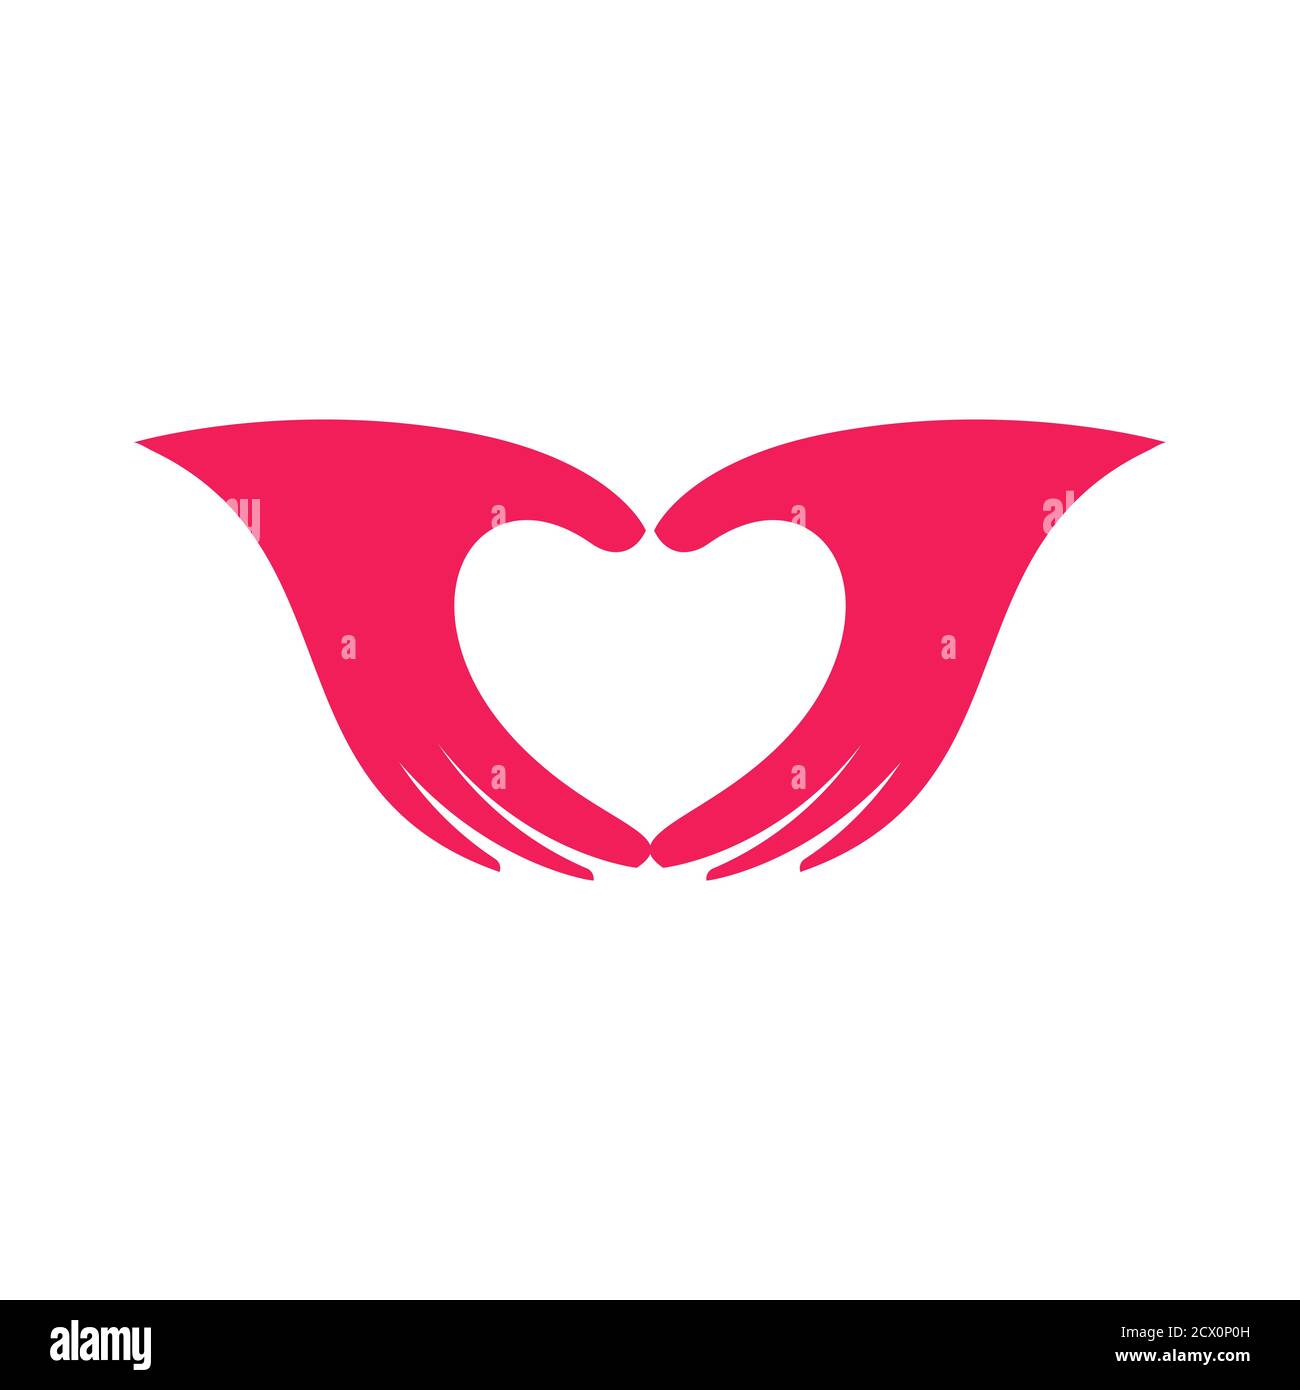 Mani rosa a forma di icona del cuore, palme che mostrano il logo del cuore, simbolo di amore e relazioni romantiche, segno di riconoscimento dell'amore o dell'apprezzamento Illustrazione Vettoriale